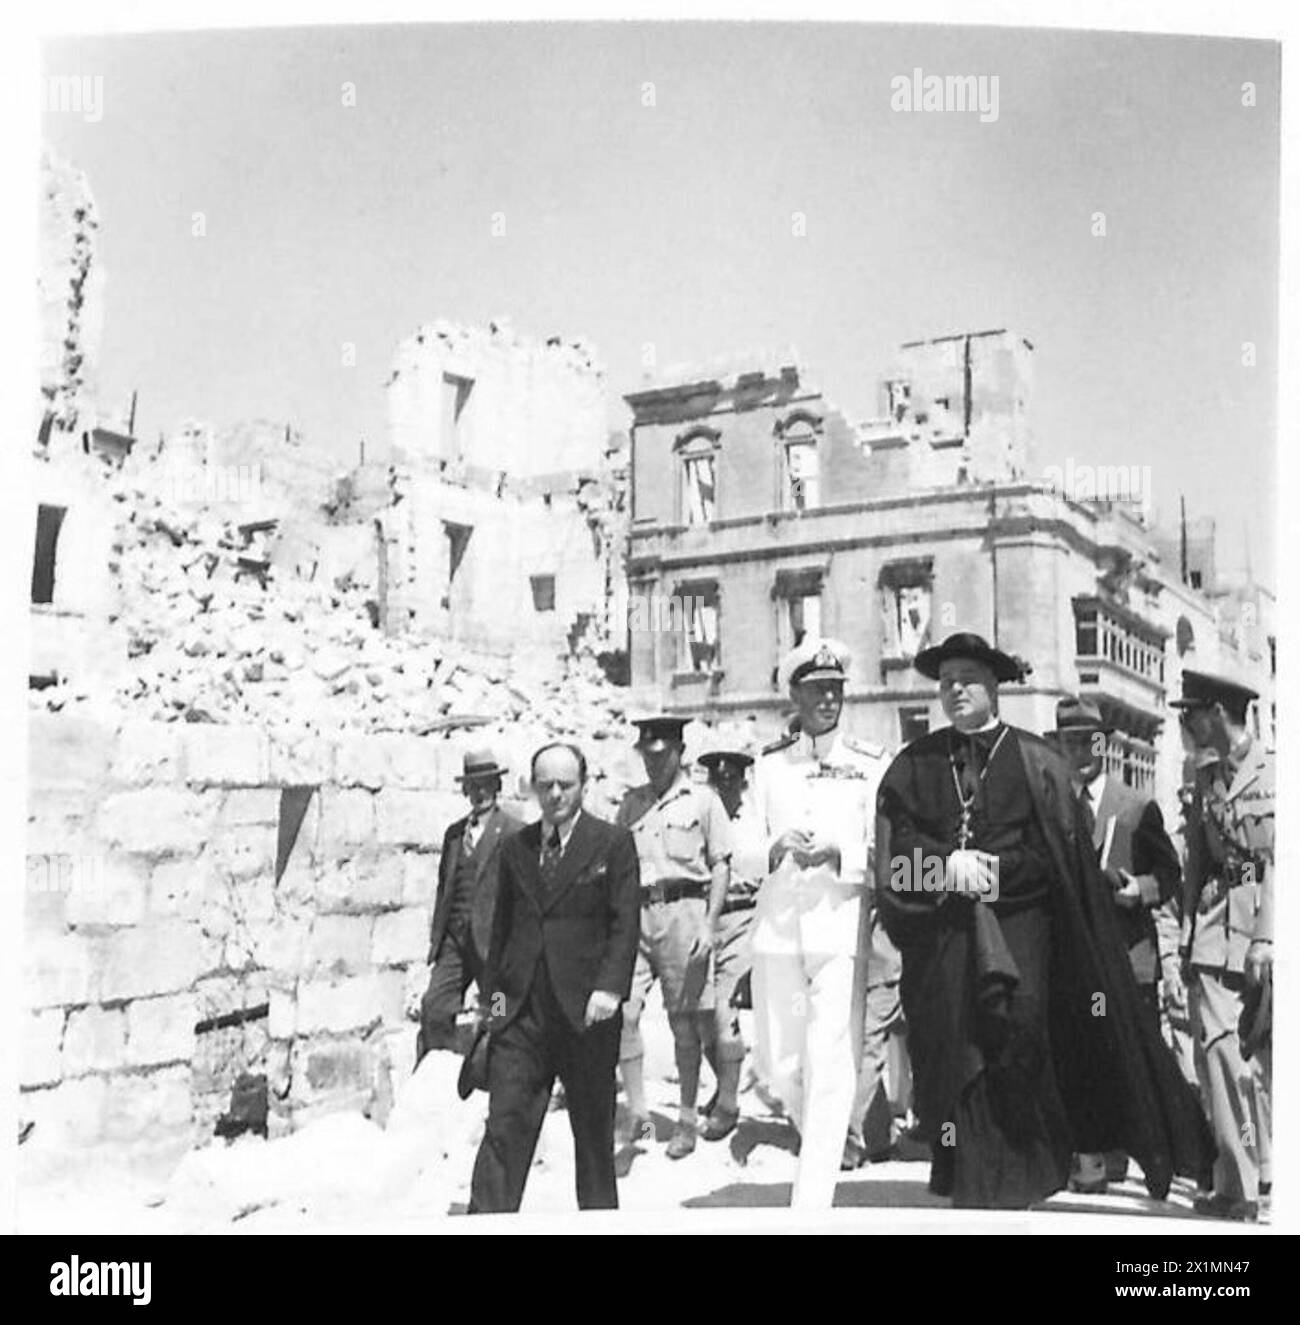 M. LE ROI VISITE L'ÎLE DE G.C. - sa Majesté avec le prêtre de paroisse visitant les zones bombardées, armée britannique Banque D'Images